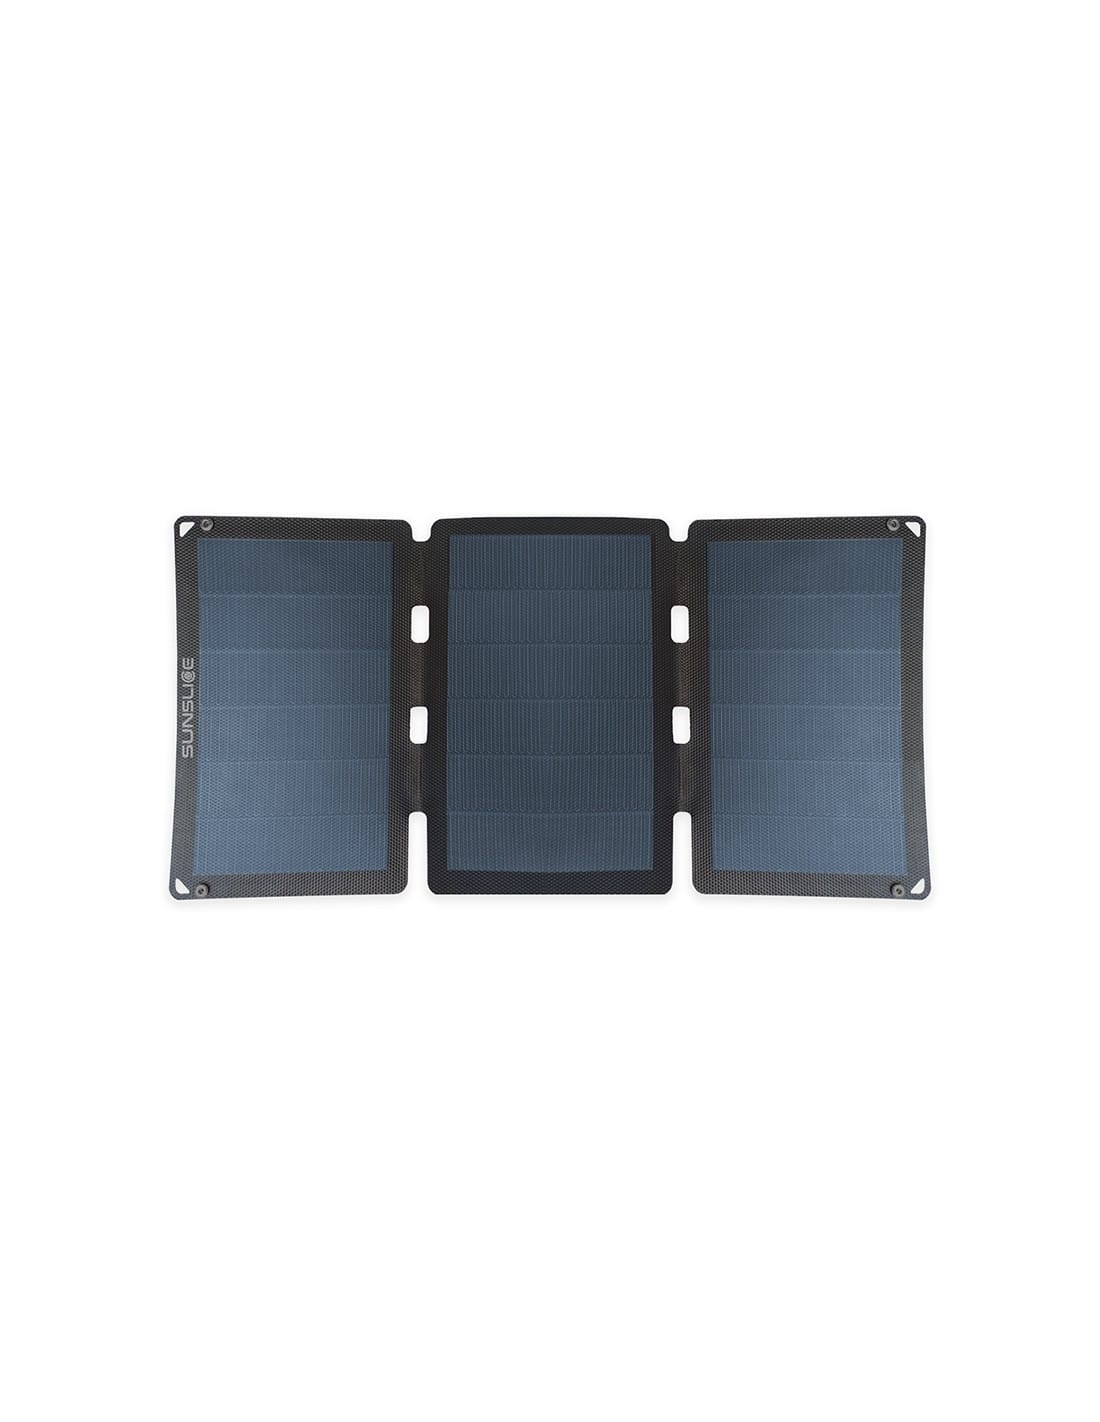 Panneau solaire portable pour le camping & randonnée - Fusion 6W